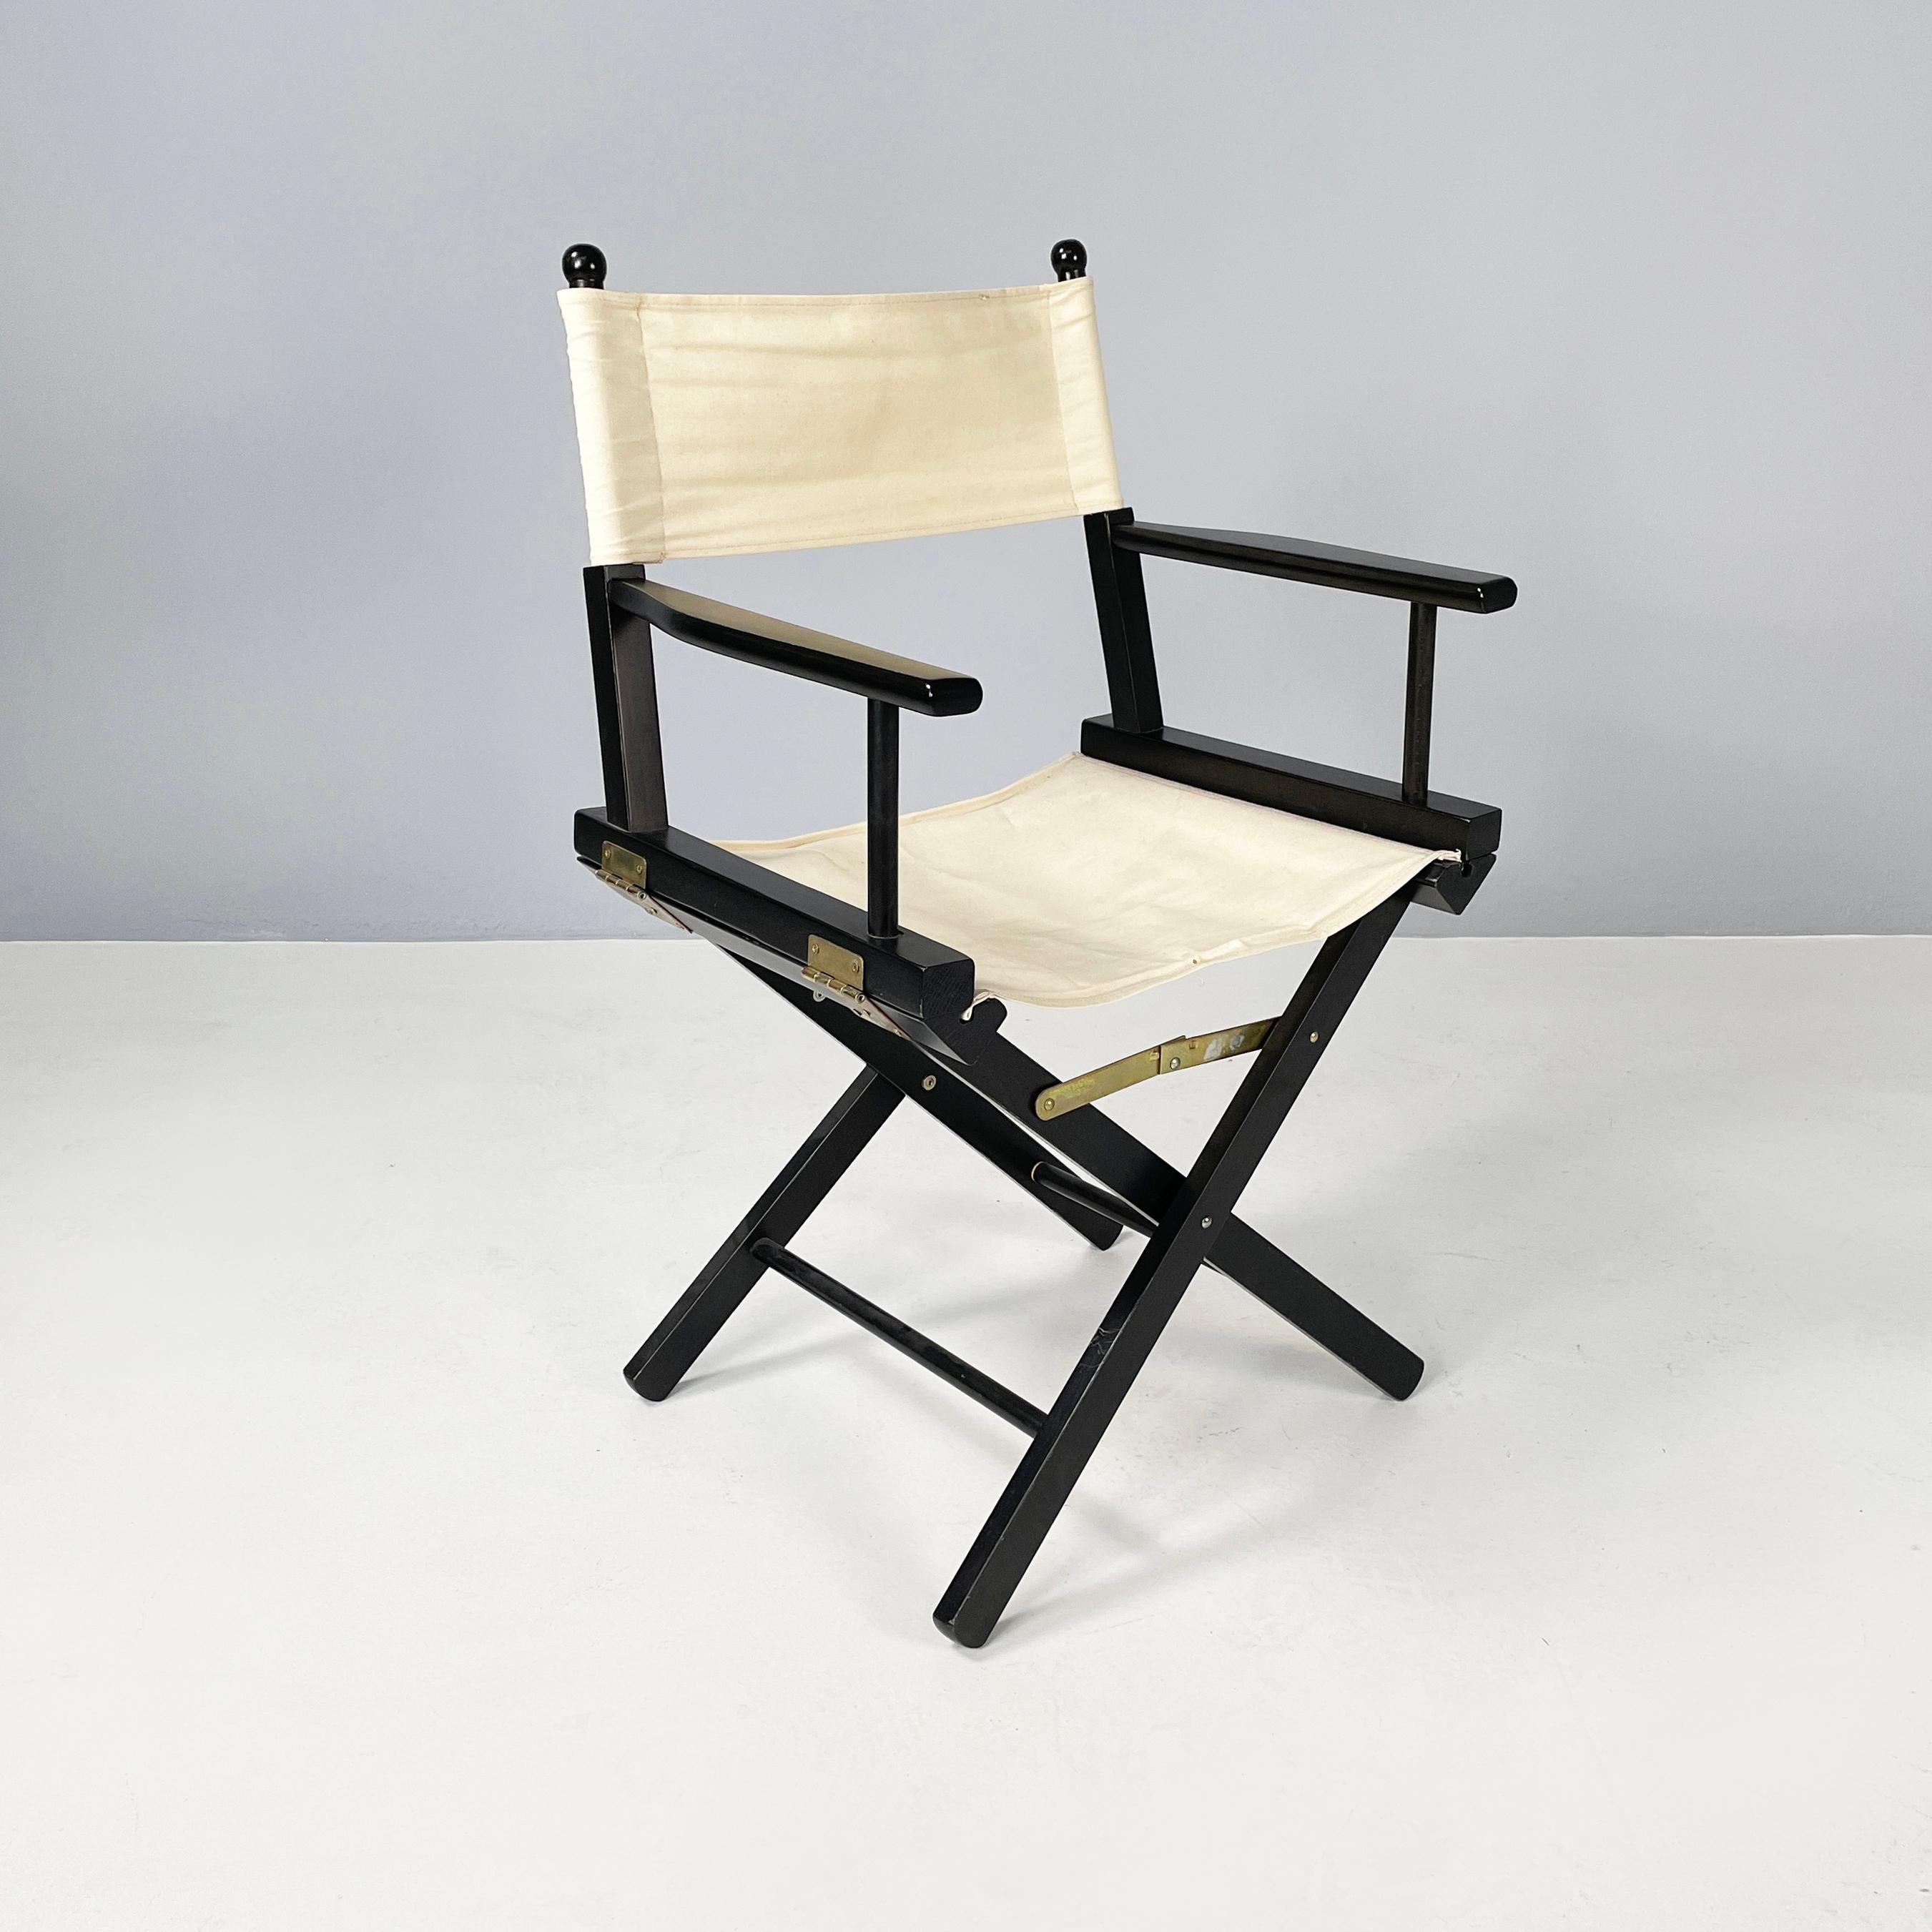 Fauteuils directoriaux pliants modernes italiens en bois noir et tissu blanc par Calligaris, 1990
Jeu de 8 chaises de réalisateur pliantes avec structure en bois peint en noir. L'assise carrée et le dossier rectangulaire sont constitués d'un rabat